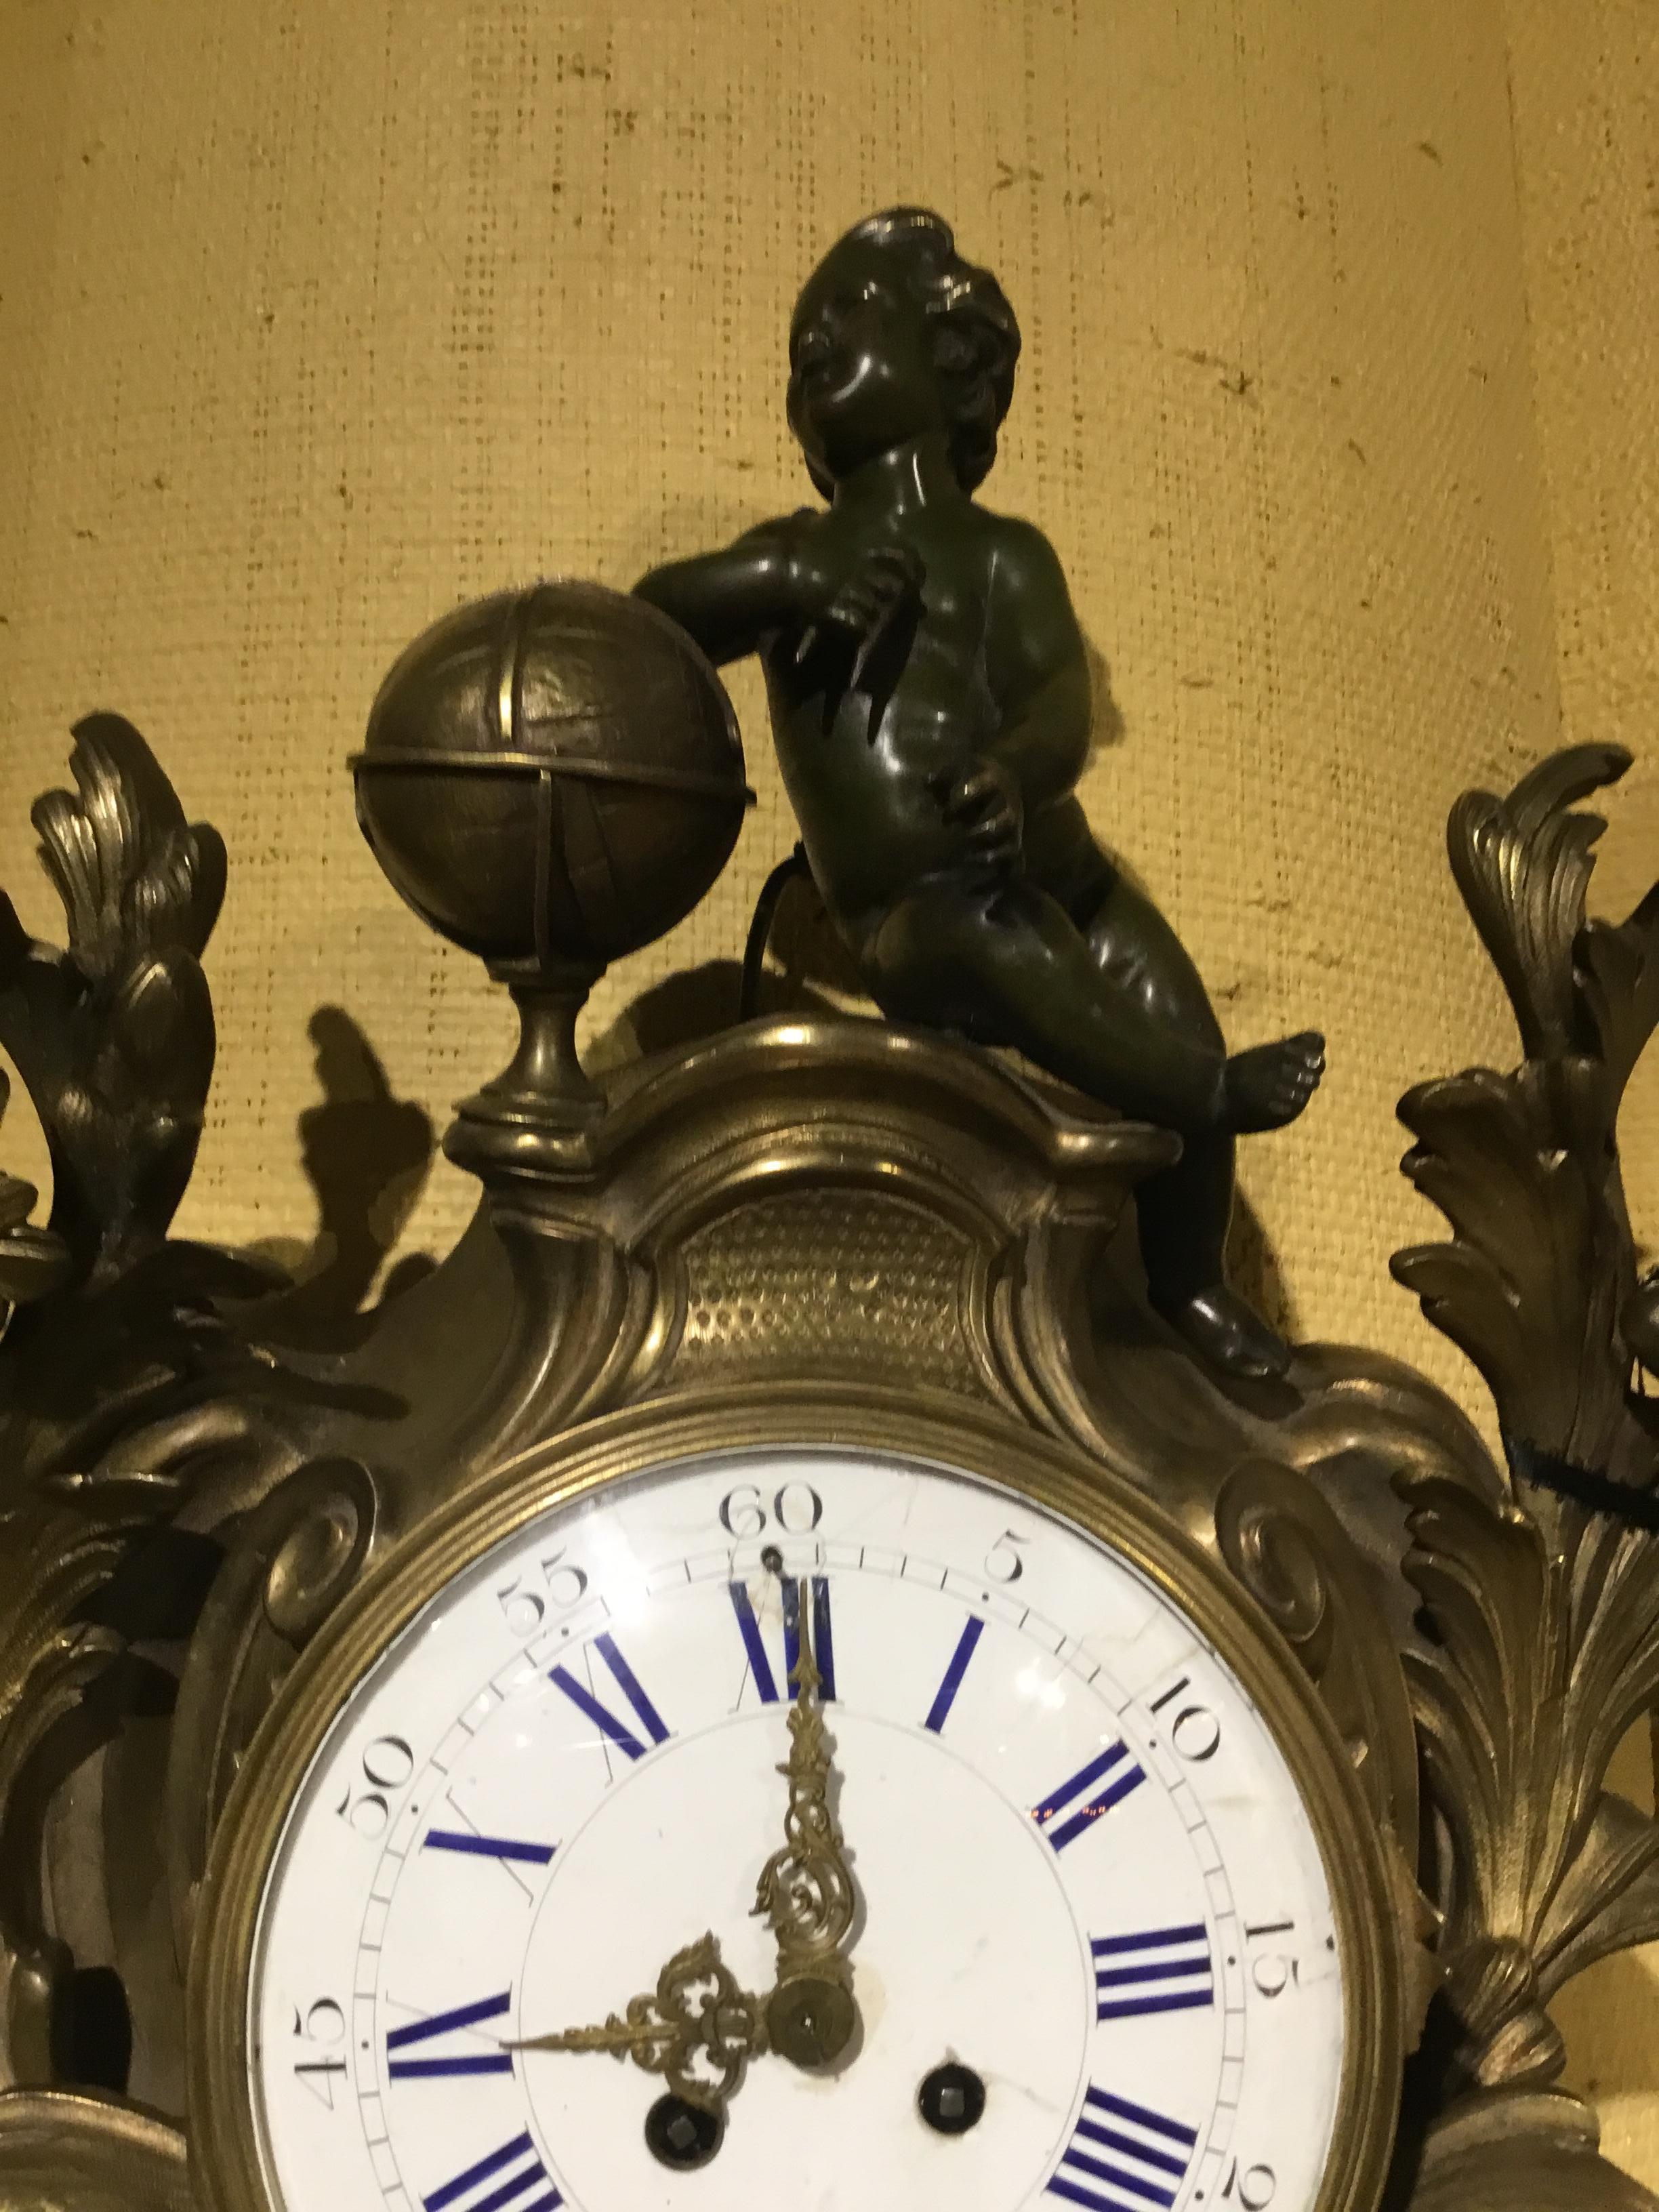 Grande horloge cartel en bronze avec un putto patiné qui trône au sommet de cette horloge exceptionnelle.
Des motifs floraux et feuillus ornent les côtés du cadran circulaire de l'horloge, qui est fait d'un matériau blanc
Émail avec chiffres